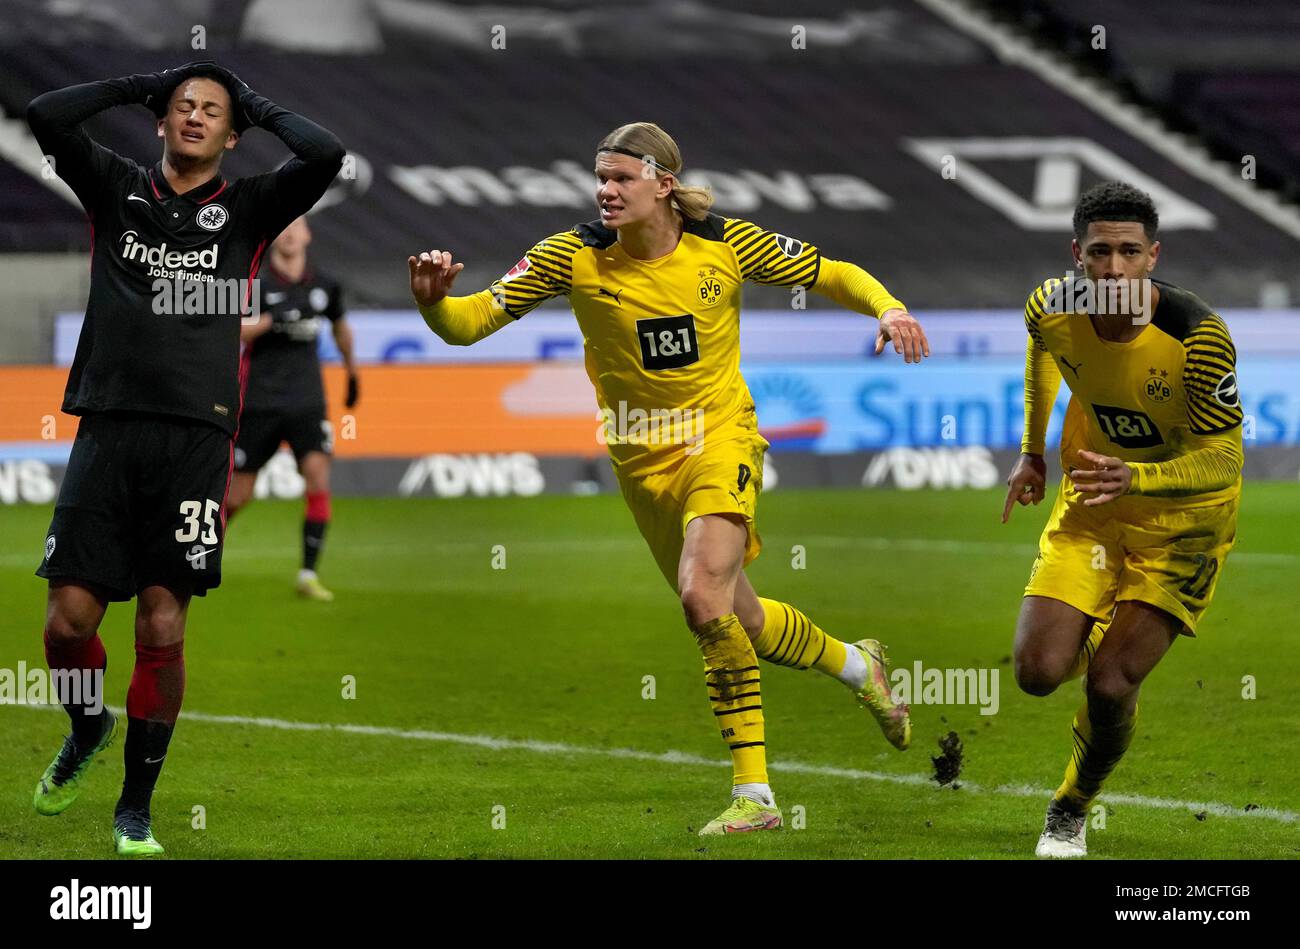 Com gol de Bellingham, Borussia Dortmund bate o Frankfurt e avança na  Bundesliga - Lance!